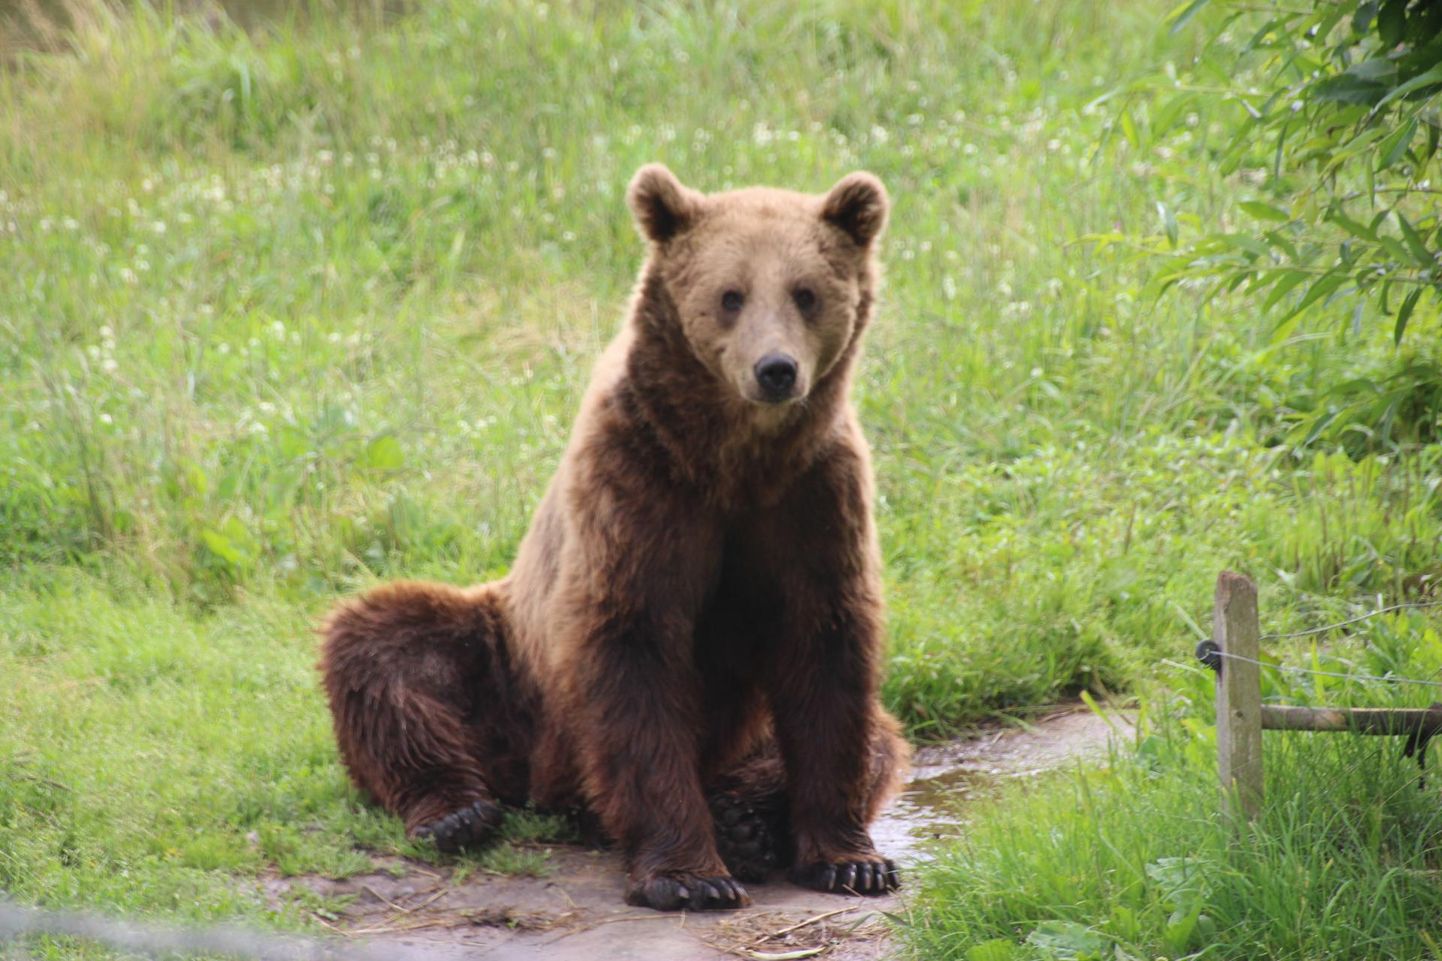 Kuigi karusid on Lõuna-Eestis üha enam, on võimalus temaga looduses kohtuda üpris väike. Küll aga on aastaid saanud metsaotte uudistada Võrumaal Saru külas asuvas Alaveski loomapargis.